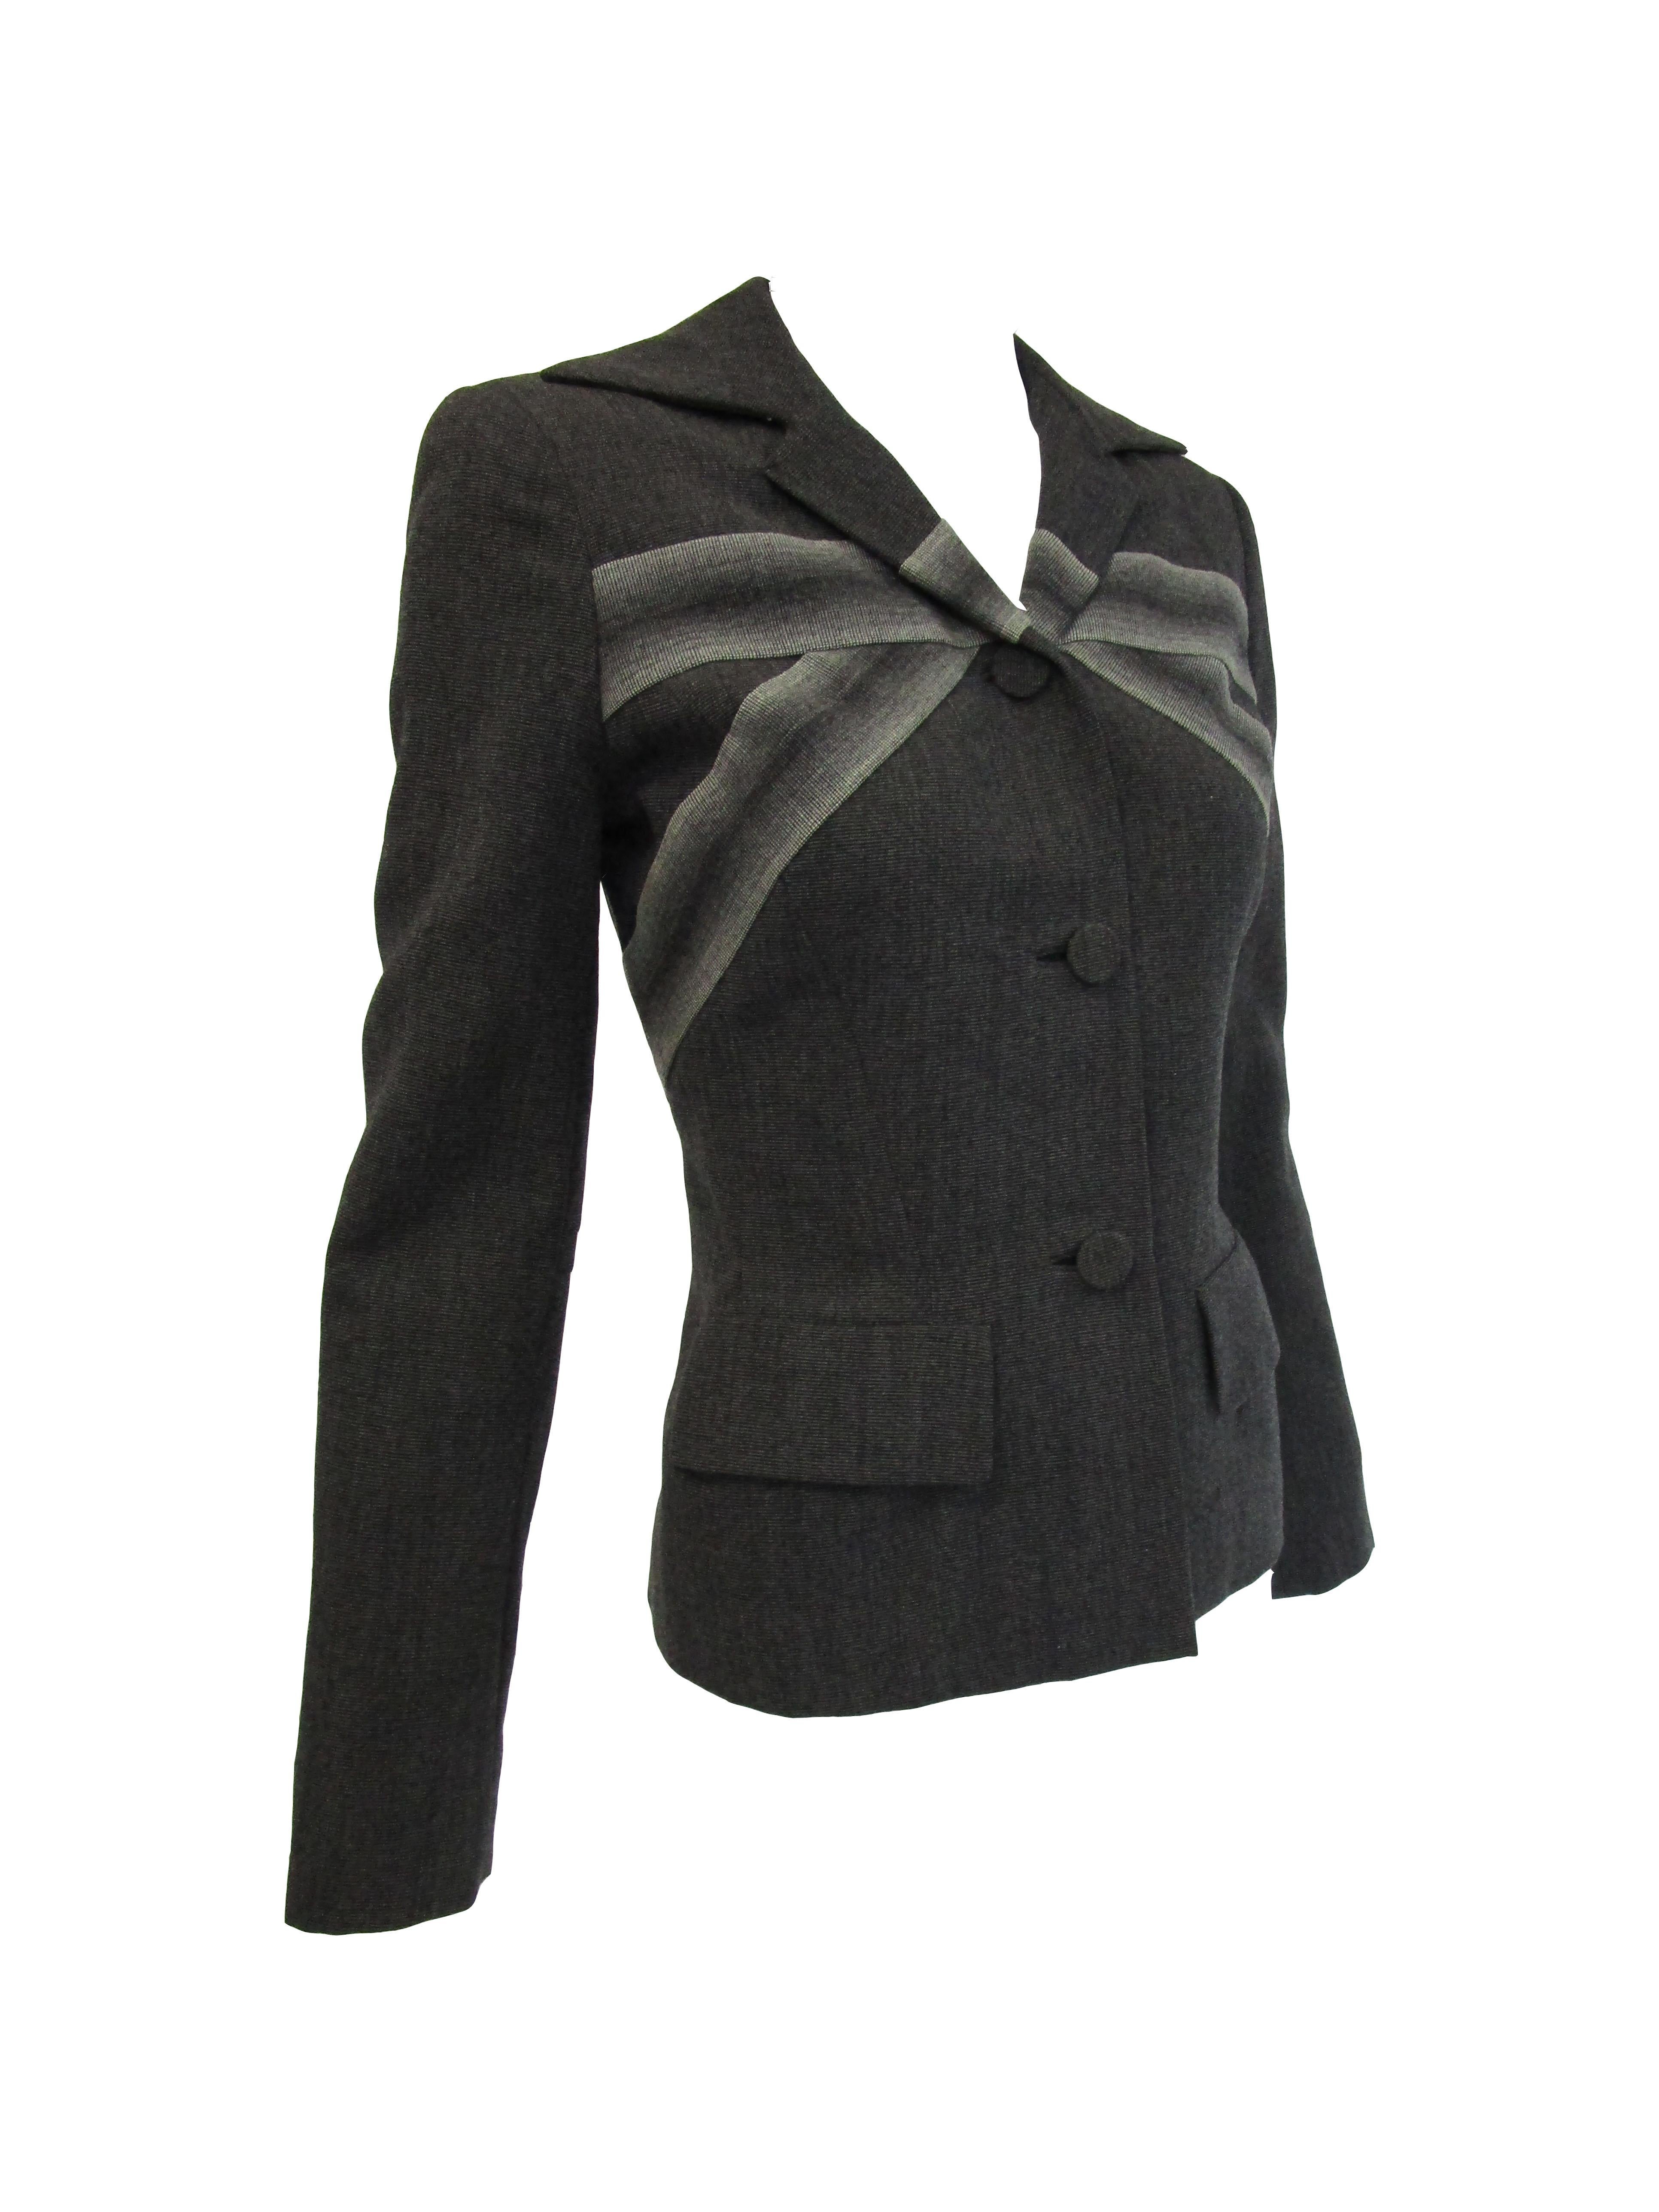 gilbert adrian suit